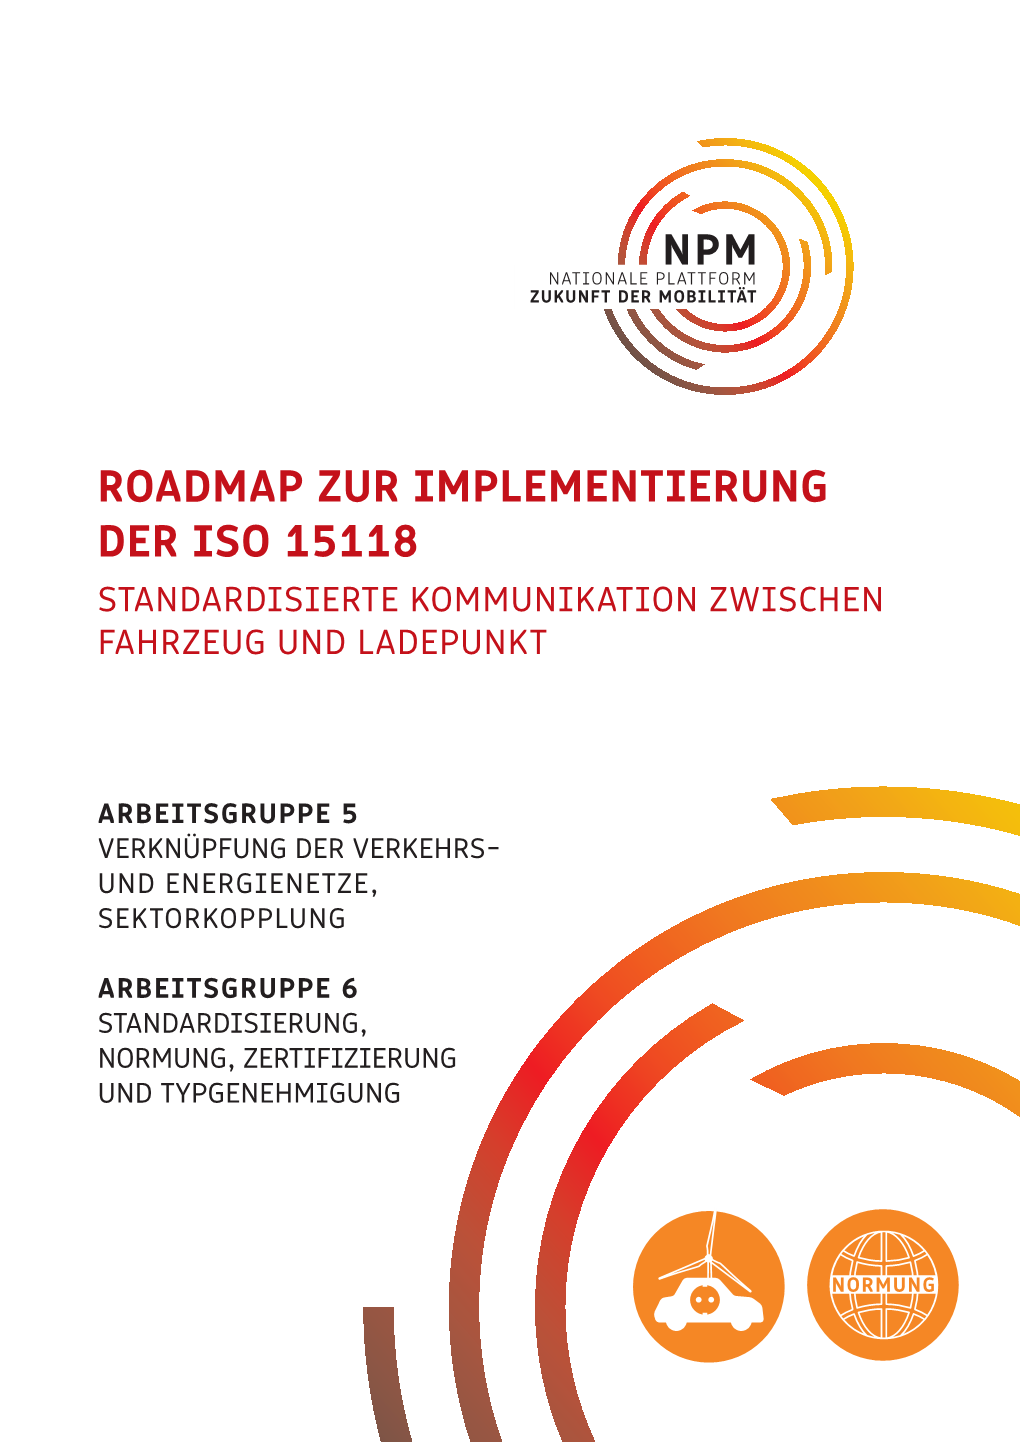 Roadmap Zur Implementierung Der Iso 15118 Standardisierte Kommunikation Zwischen Fahrzeug Und Ladepunkt